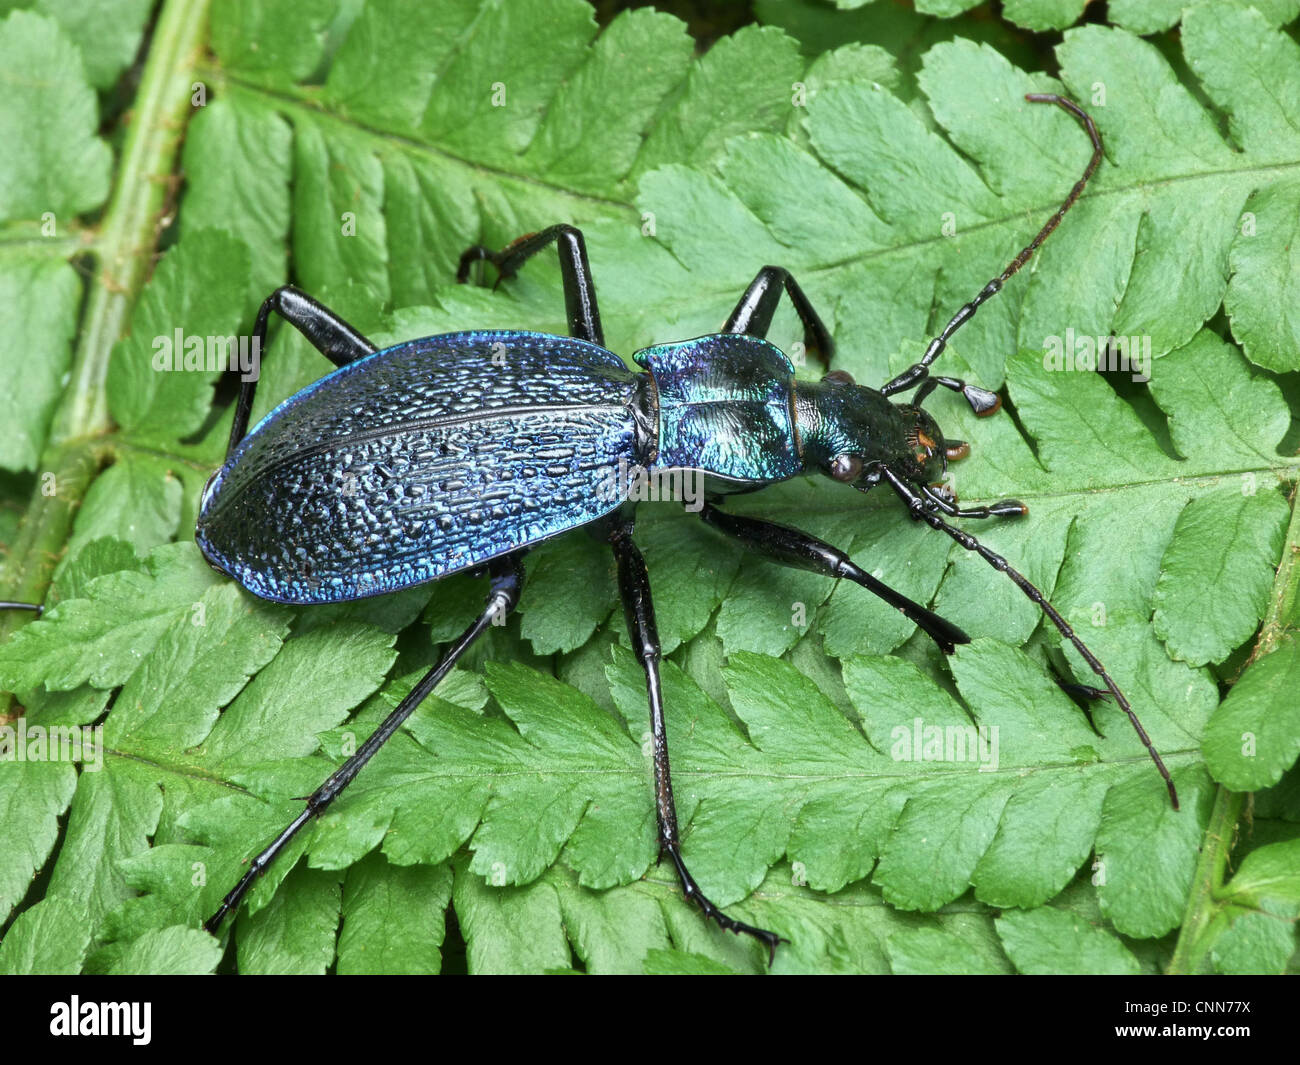 Massa blu Beetle (Carabus intricatus) adulto, in appoggio sulle fronde di felce, Valle Cannobina, Piemonte, Italia settentrionale, luglio Foto Stock